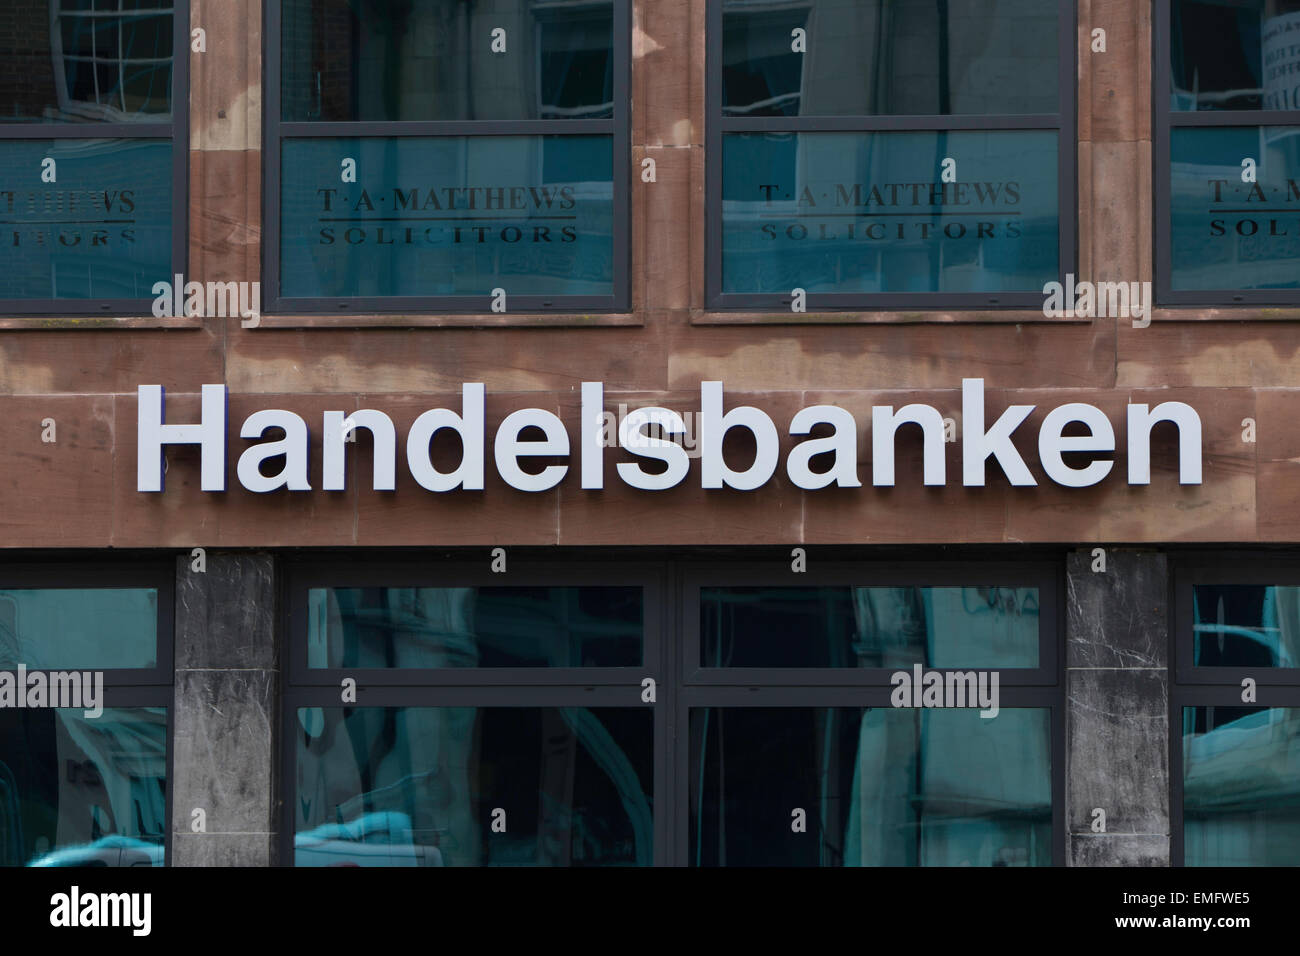 Handelsbanken high street branch, England, UK Stock Photo